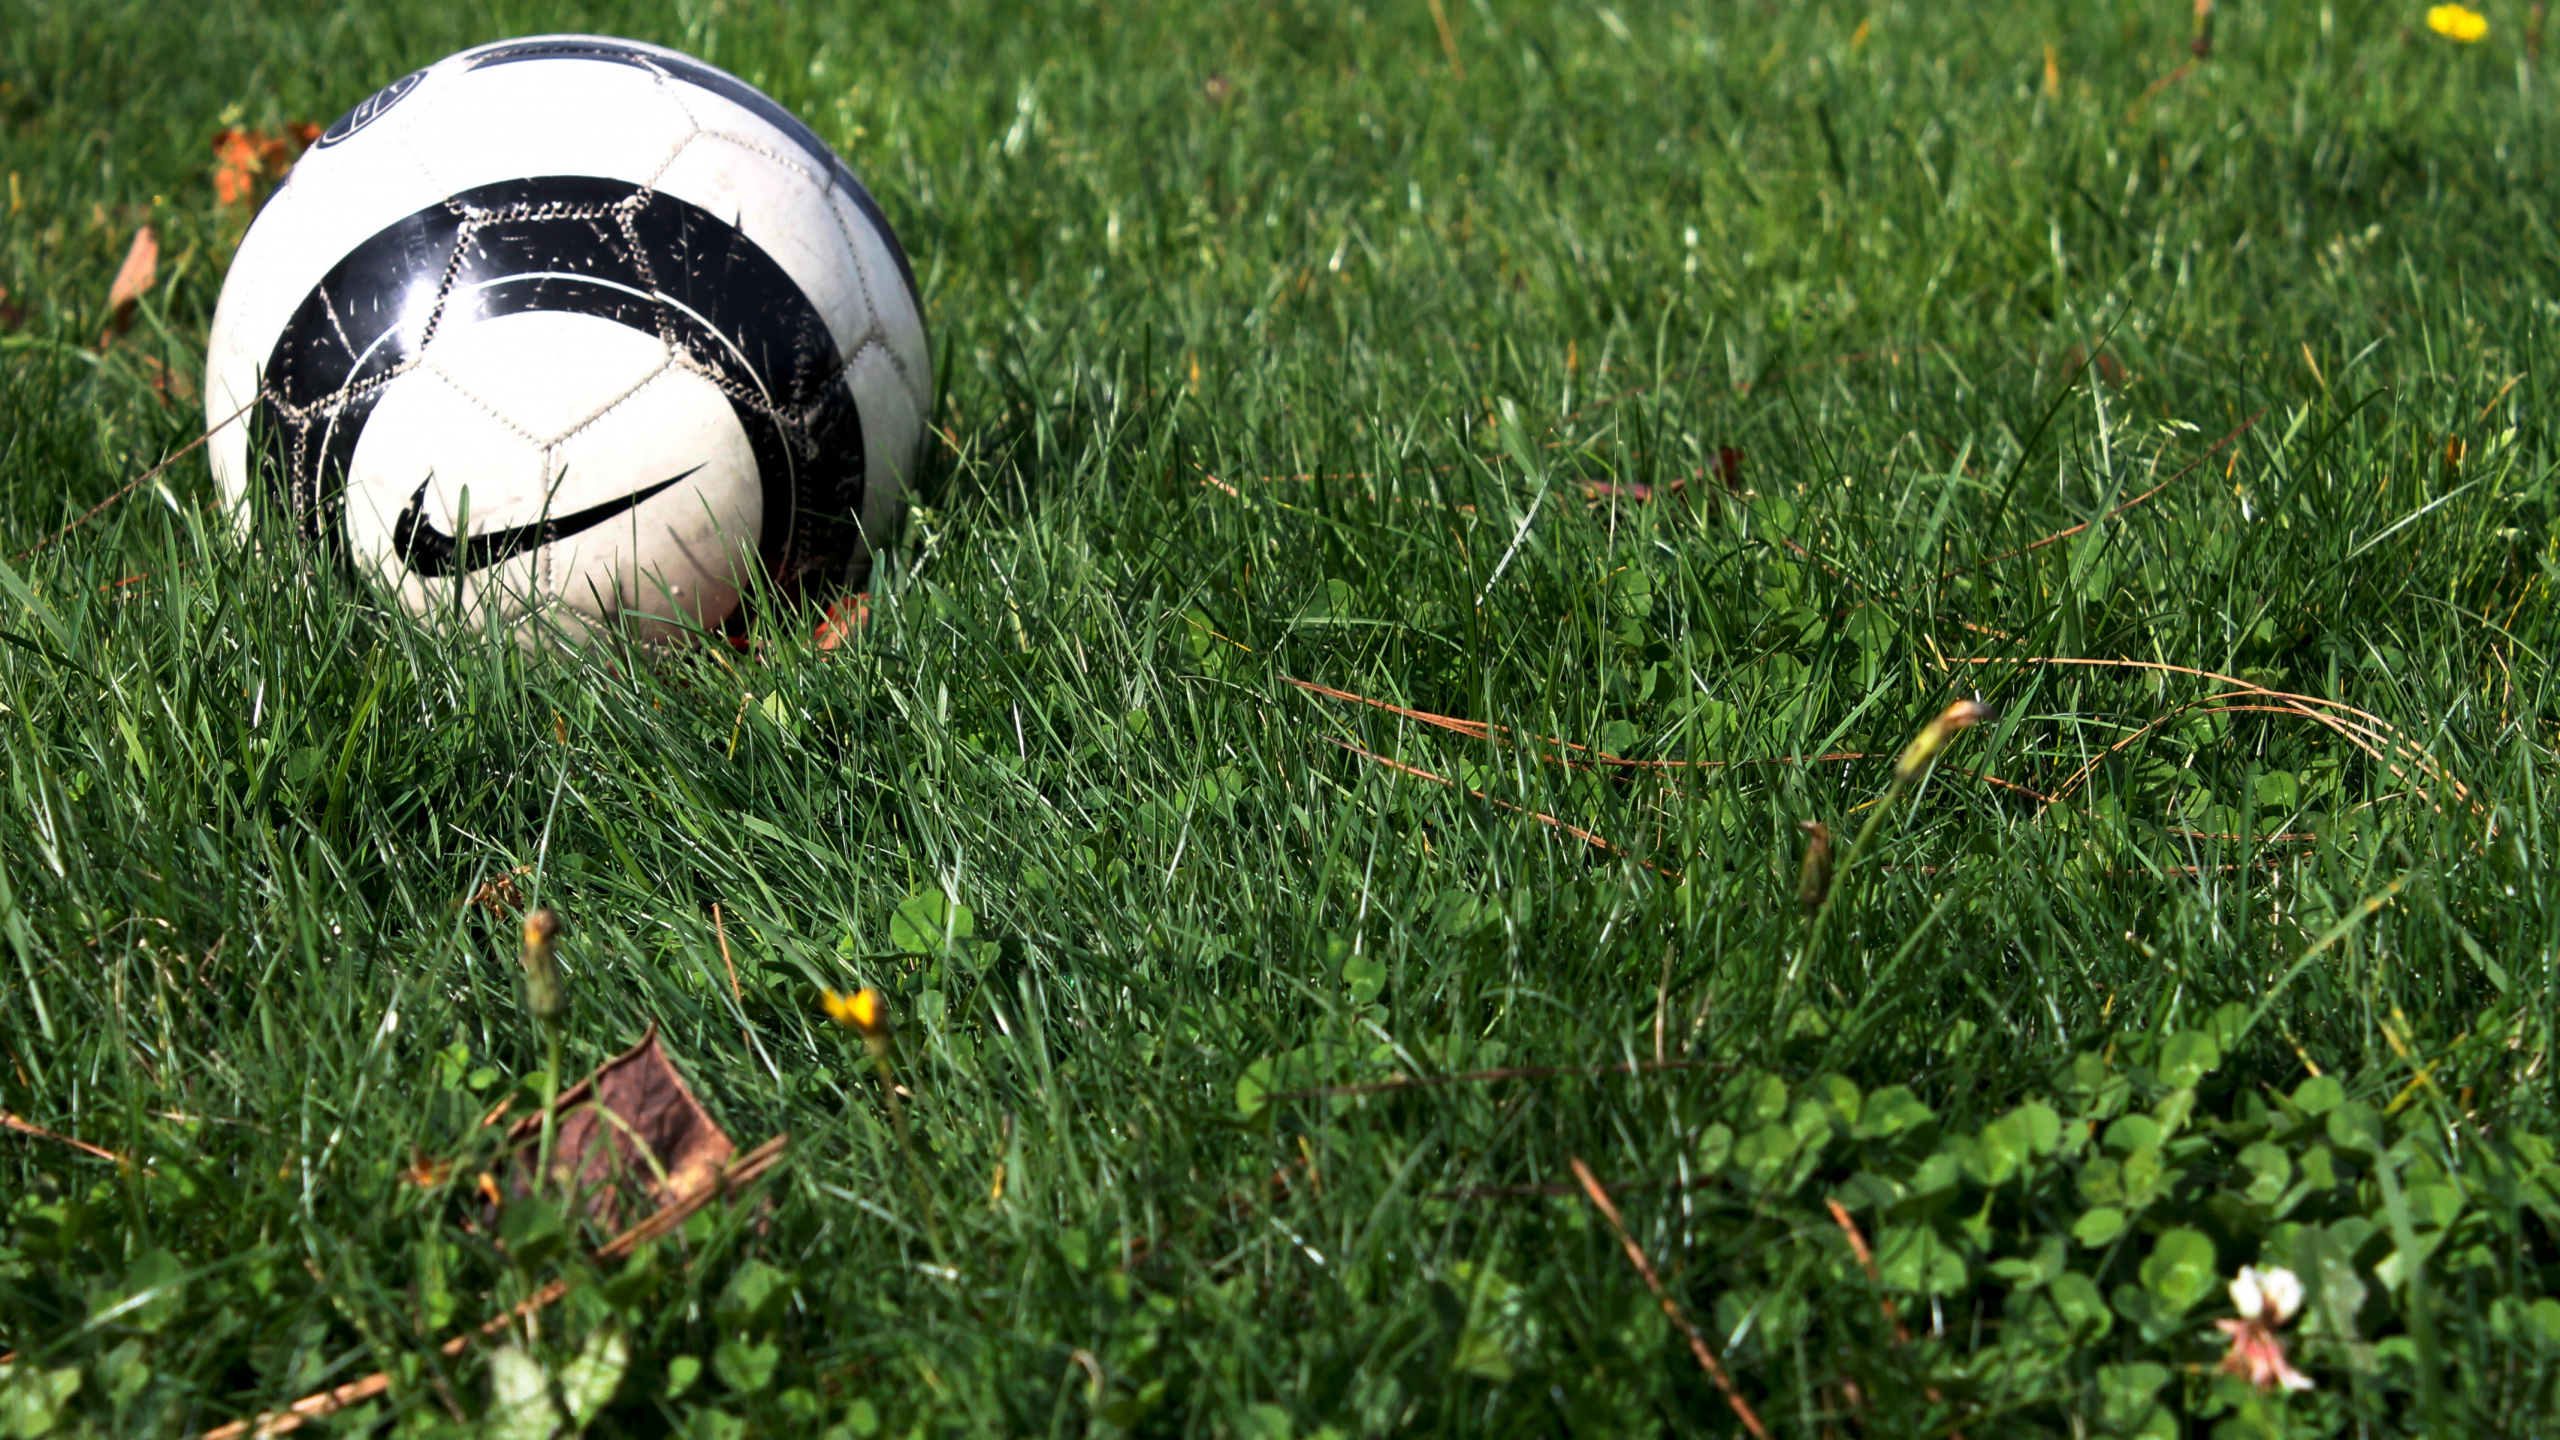 球, 体育设备, 足球, 草, 草坪 壁纸 2560x1440 允许